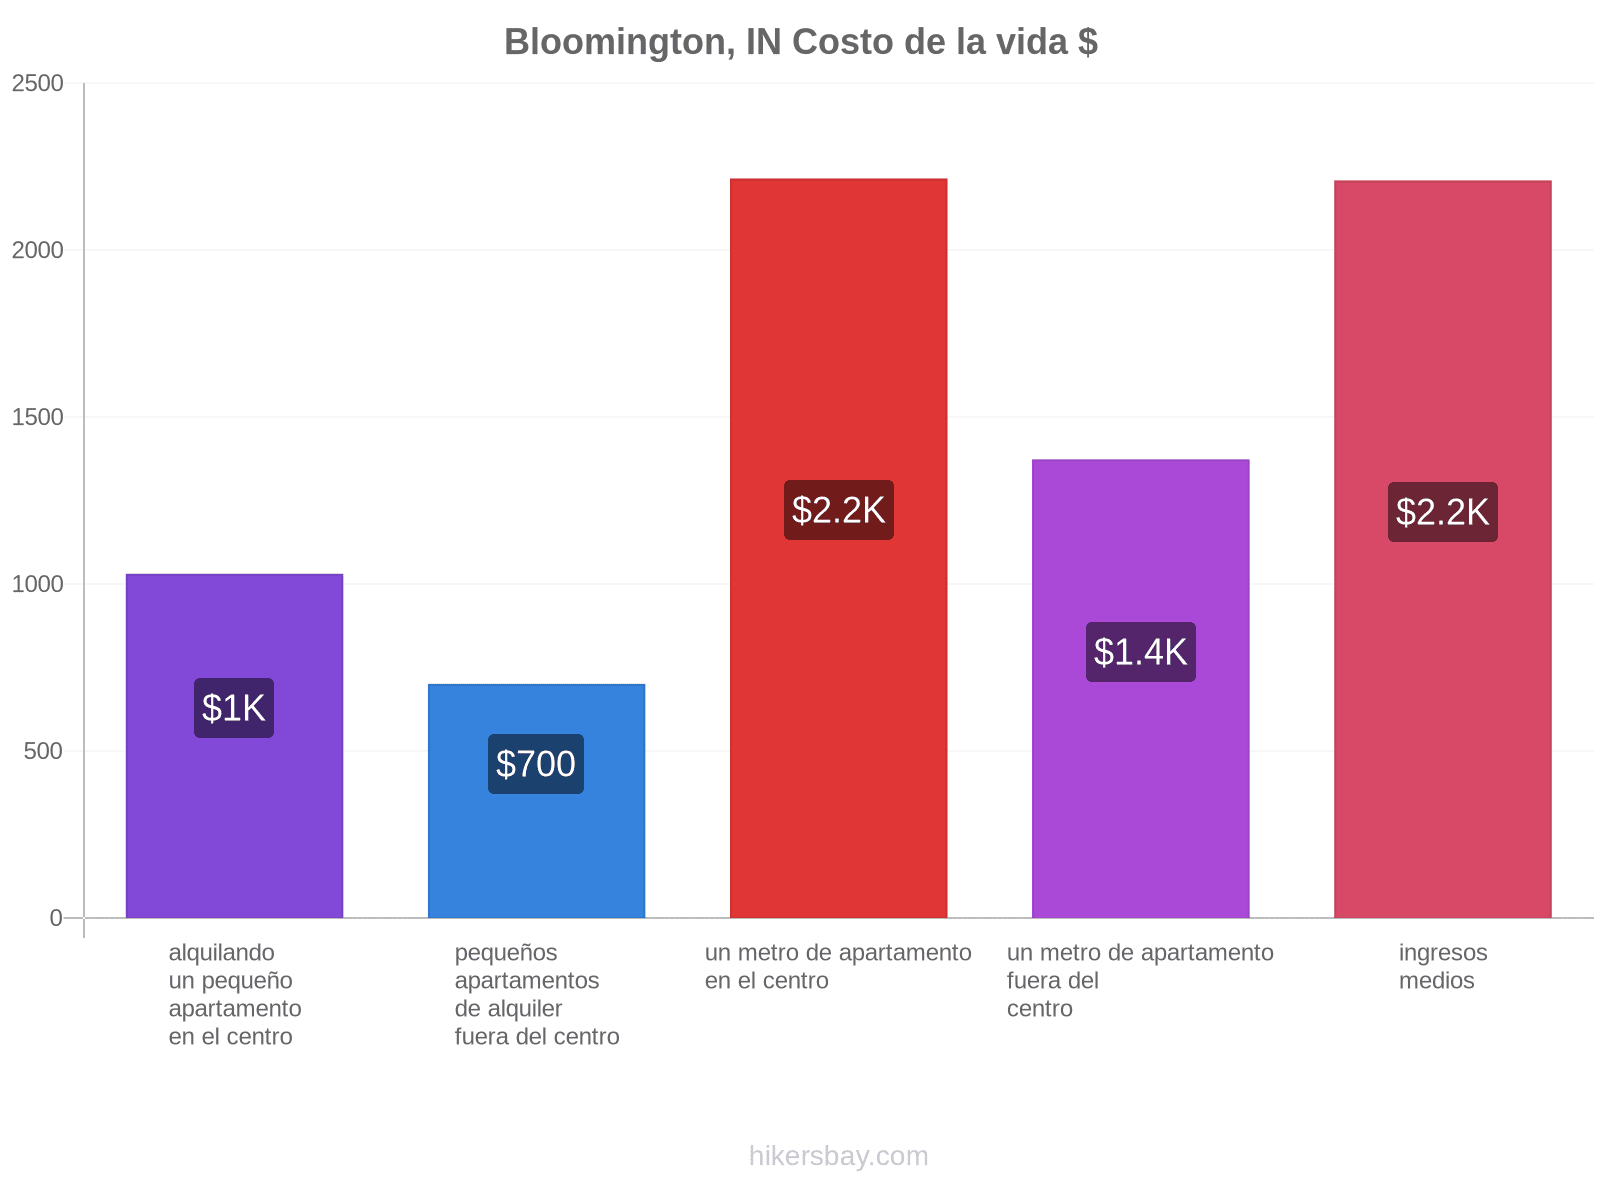 Bloomington, IN costo de la vida hikersbay.com